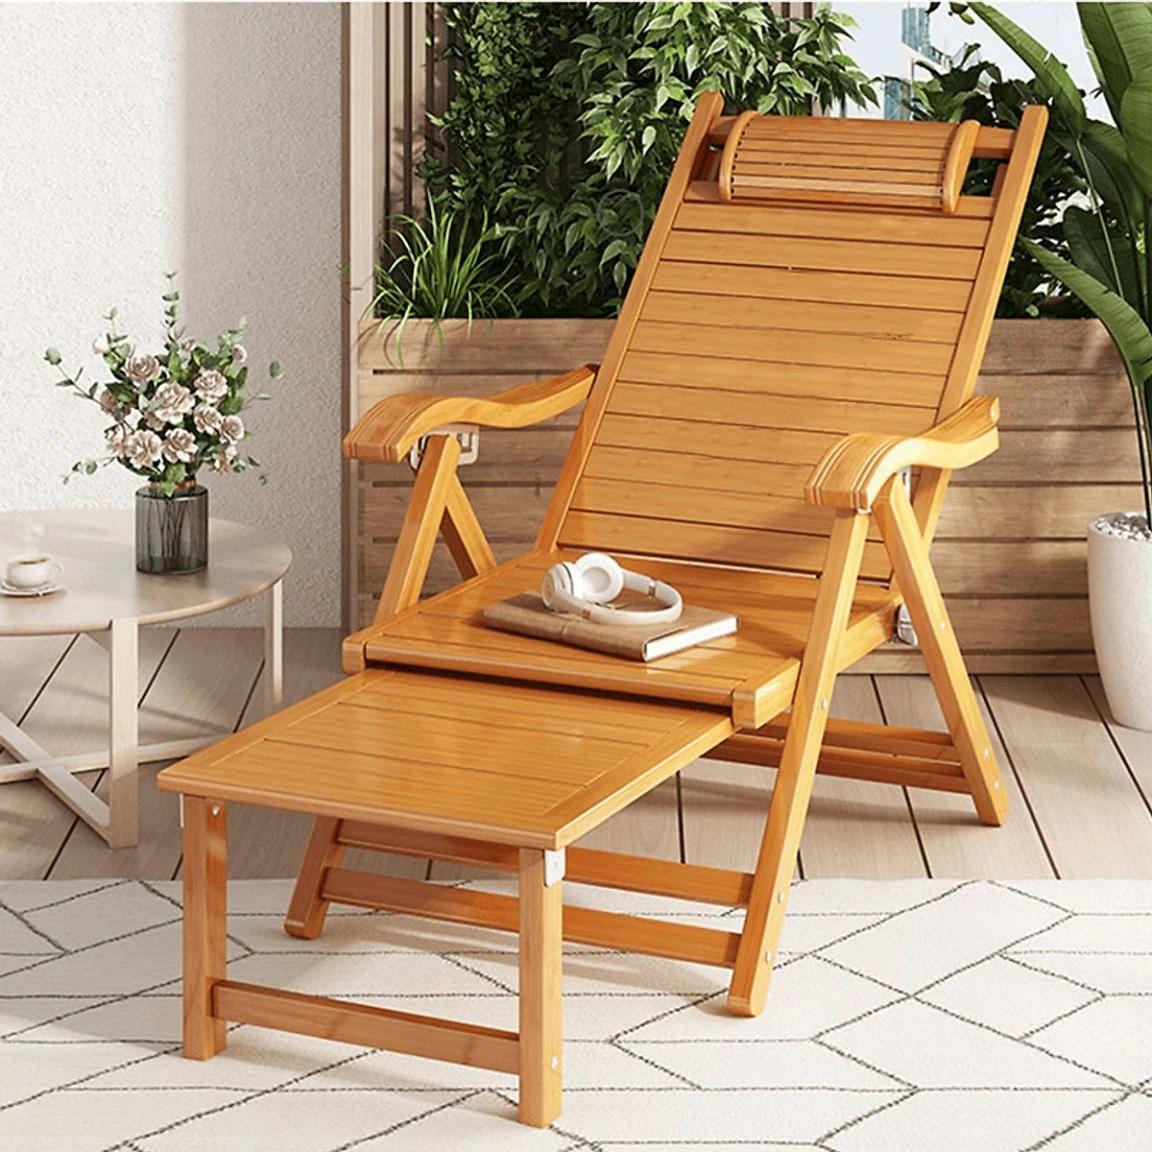 Thiết kế ghế thư giãn gỗ sang trọng được làm từ gỗ hương​